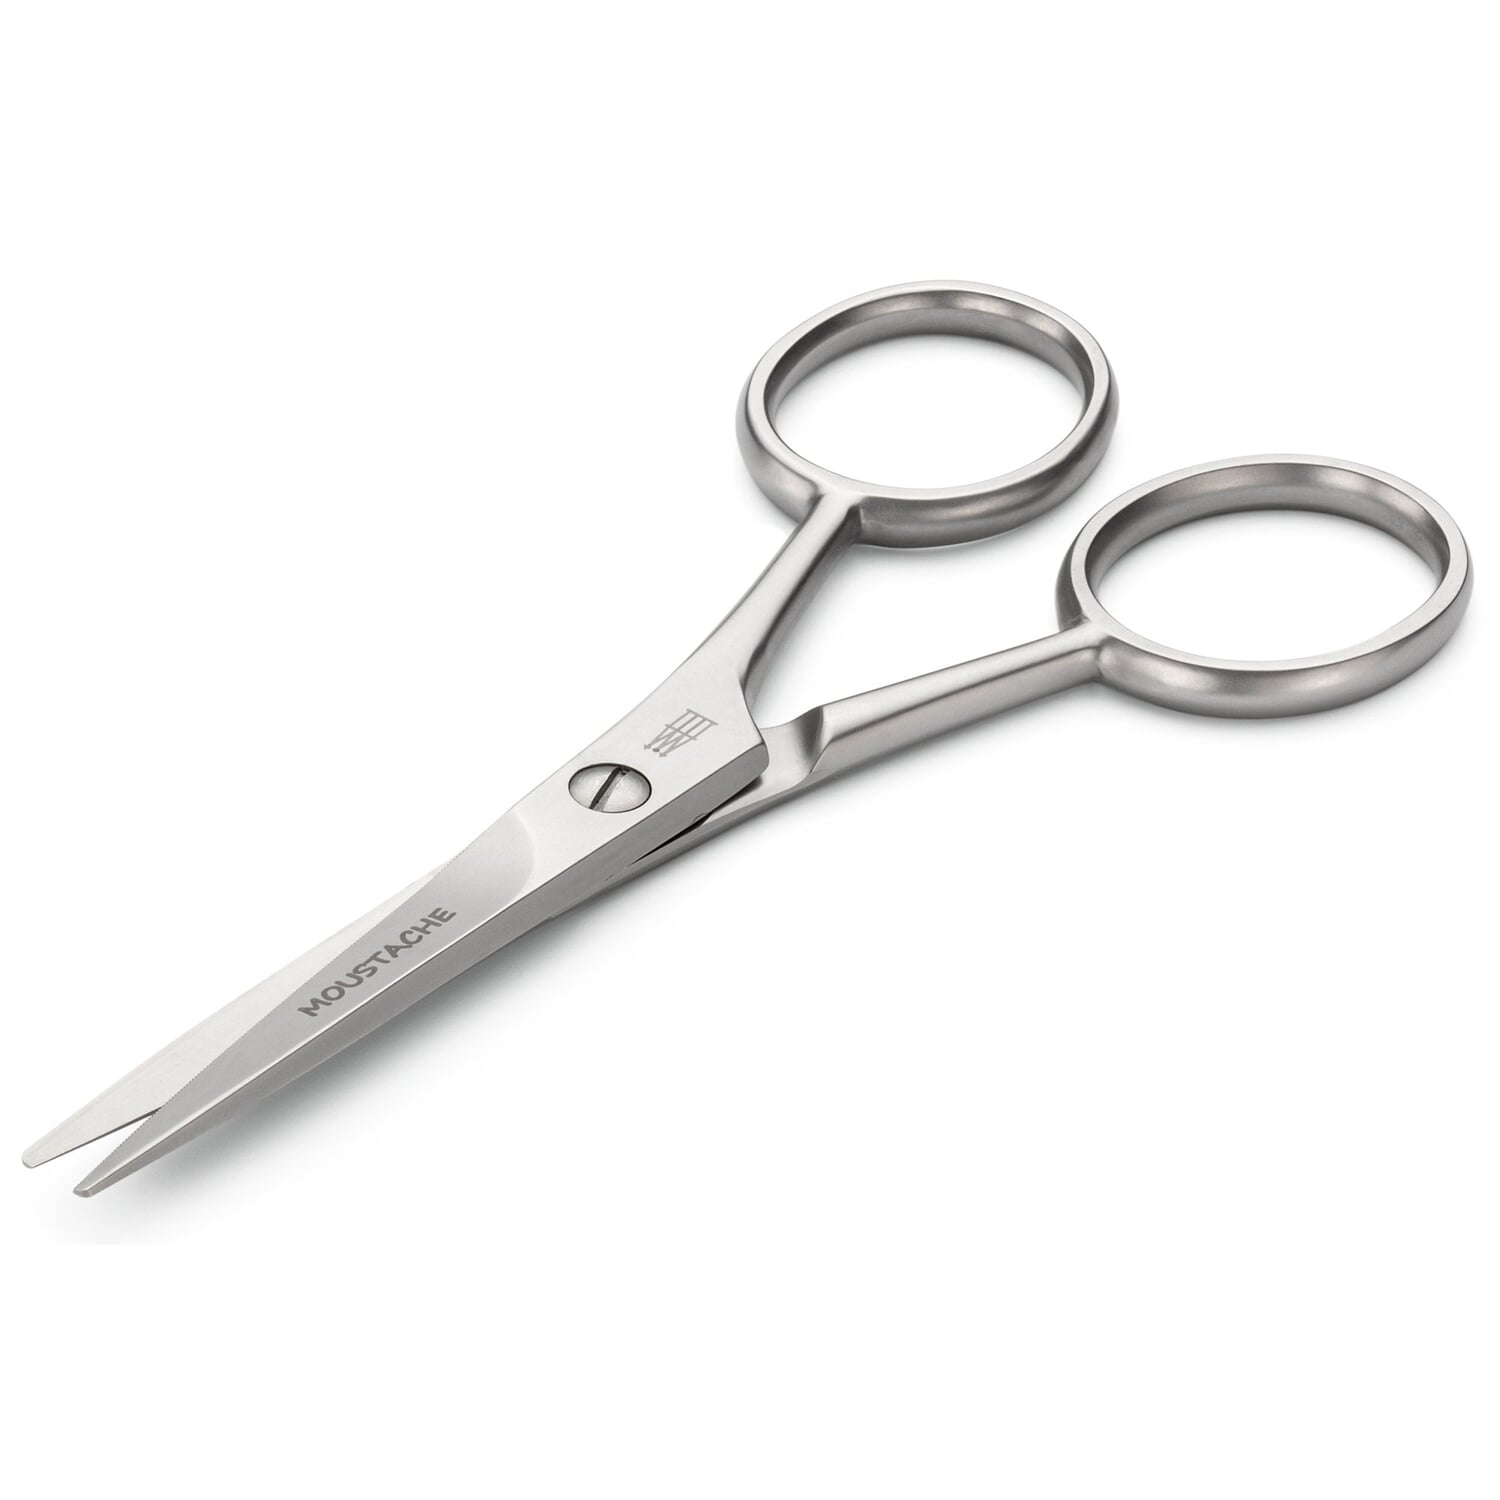 åndelig folder Hjelm Beard scissors stainless steel | Manufactum